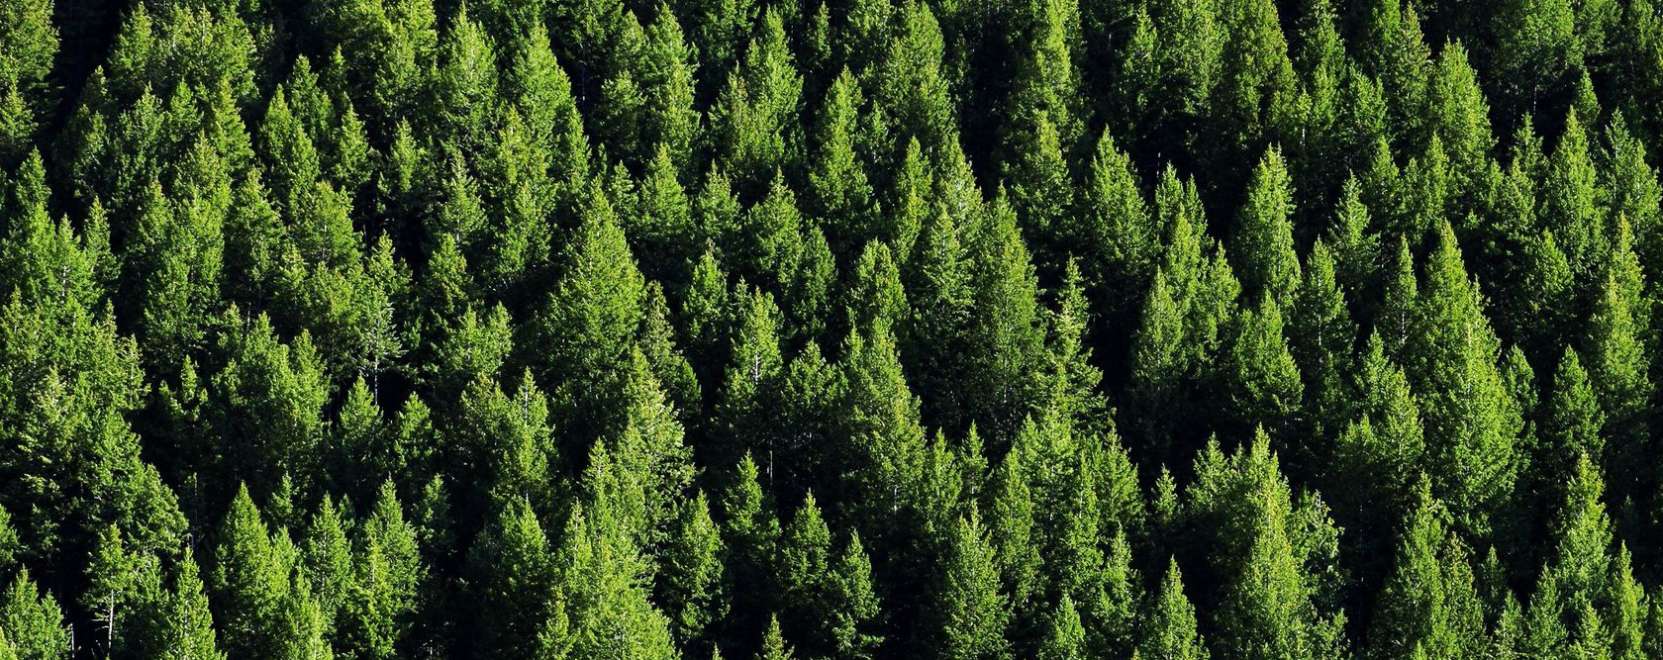 Felhőalapú erdészeti alkalmazást fejleszt egy magyar cég